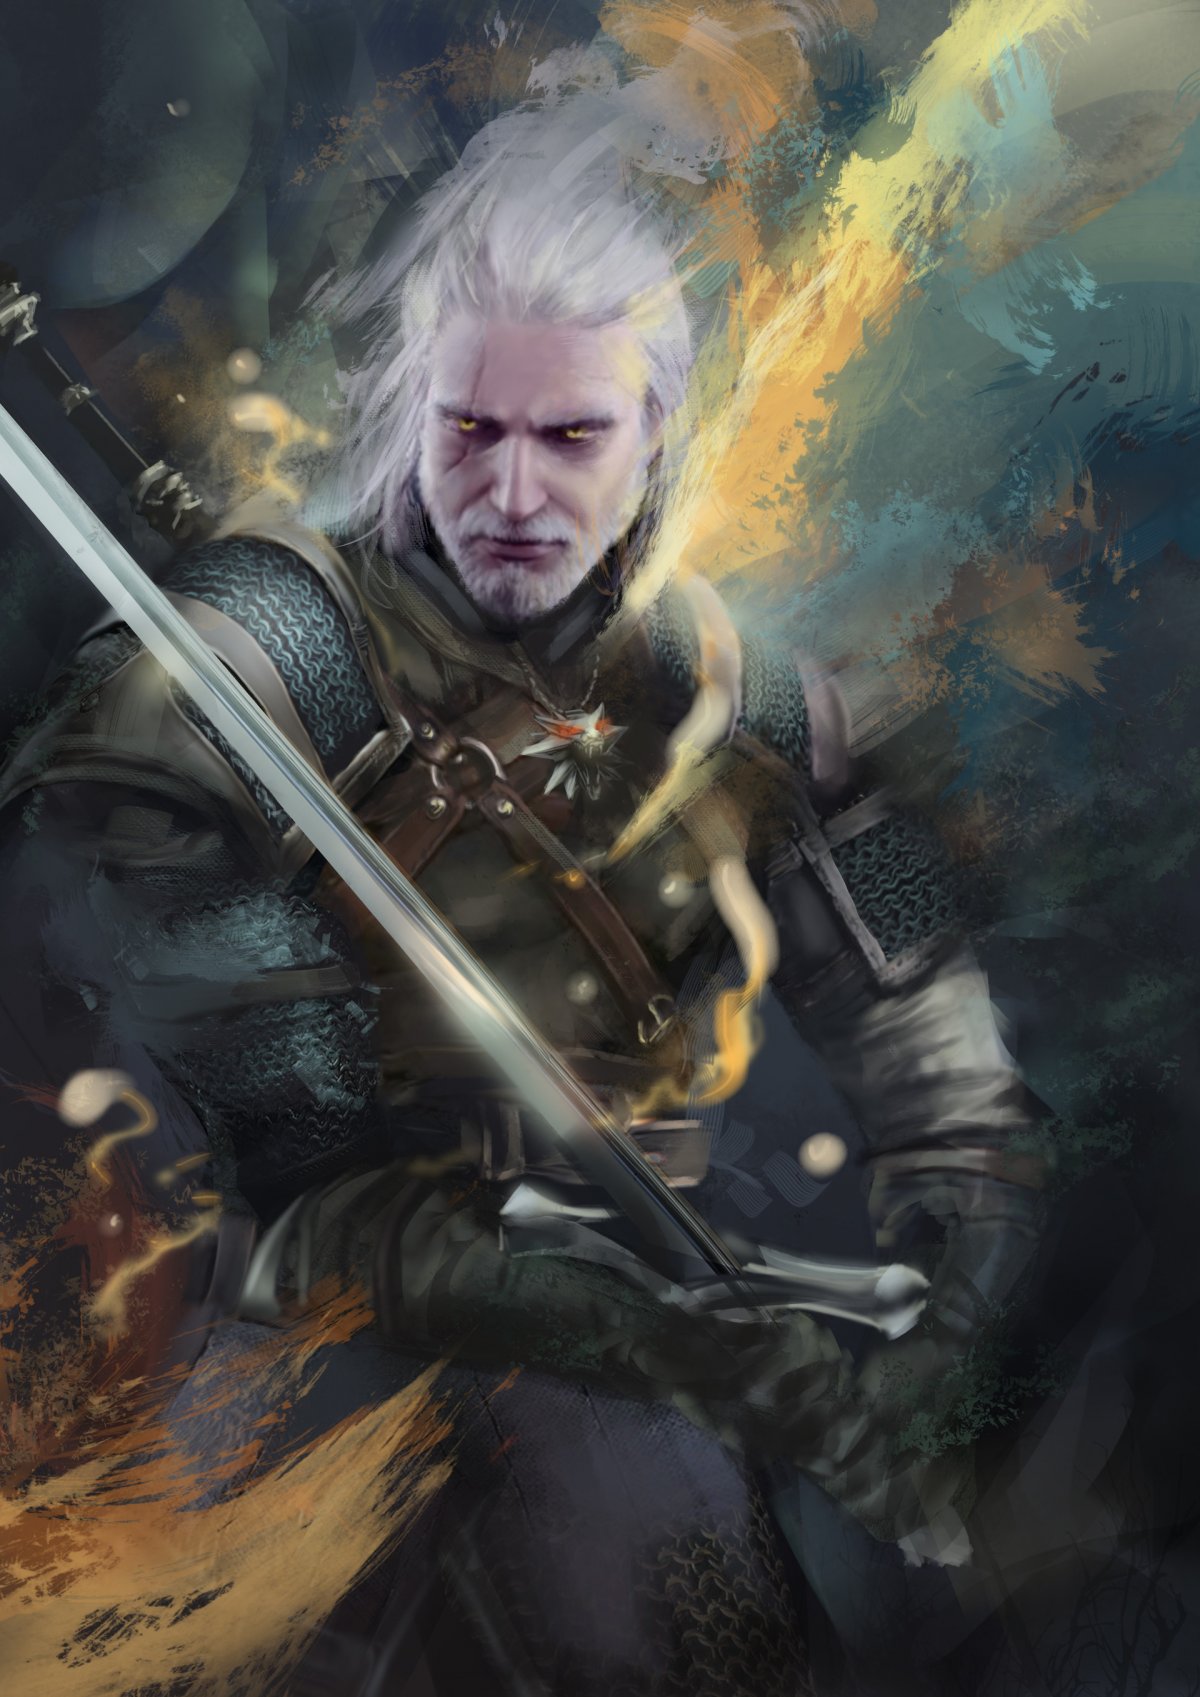 The Witcher 3 Geralt Art.